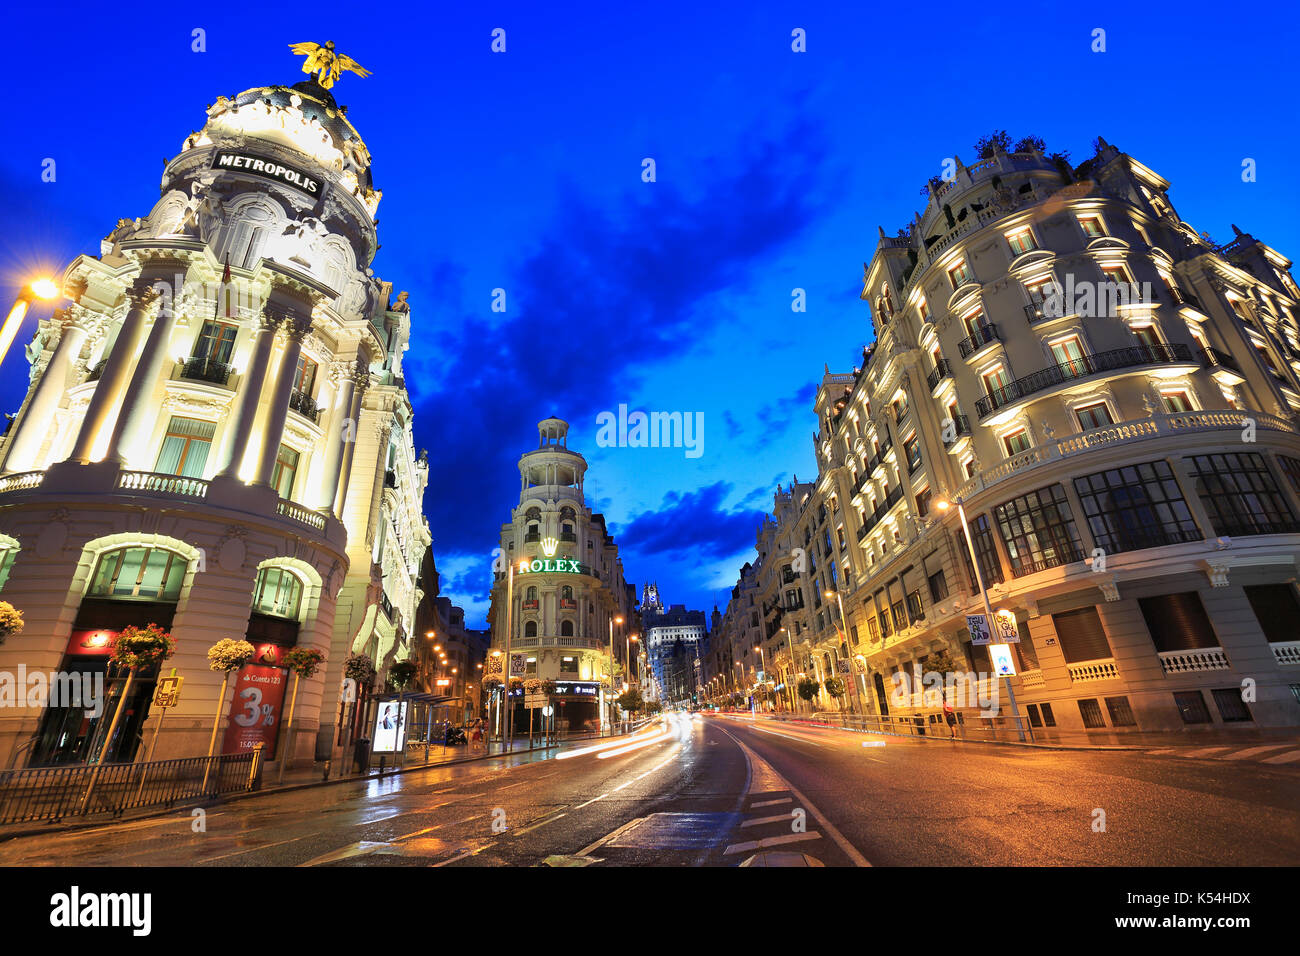 MADRID, Spanien - 25. Juli 2017: Gran Vía ist ein gehobenes Einkaufsstraße befindet sich im Zentrum von Madrid. Bekannt als die spanische Broadway. Stockfoto